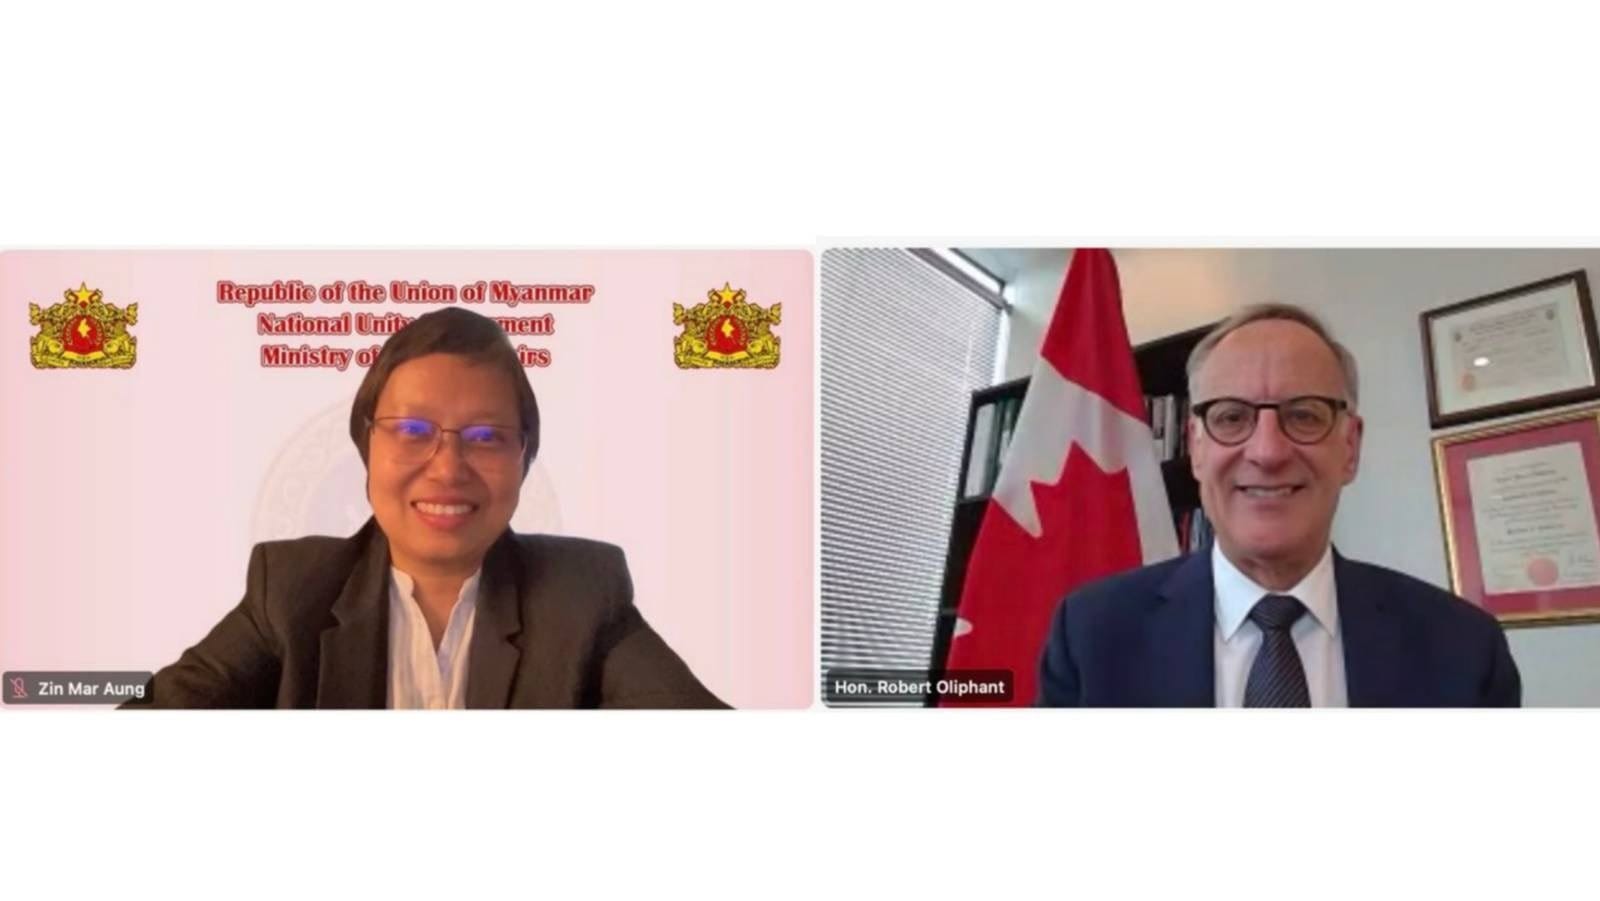 NUG နိုင်ငံခြားရေးဝန်ကြီး ကနေဒါနိုင်ငံခြားရေးထိပ်တန်းအရာရှိနှင့် အွန်လိုင်းမှဆွေးနွေး